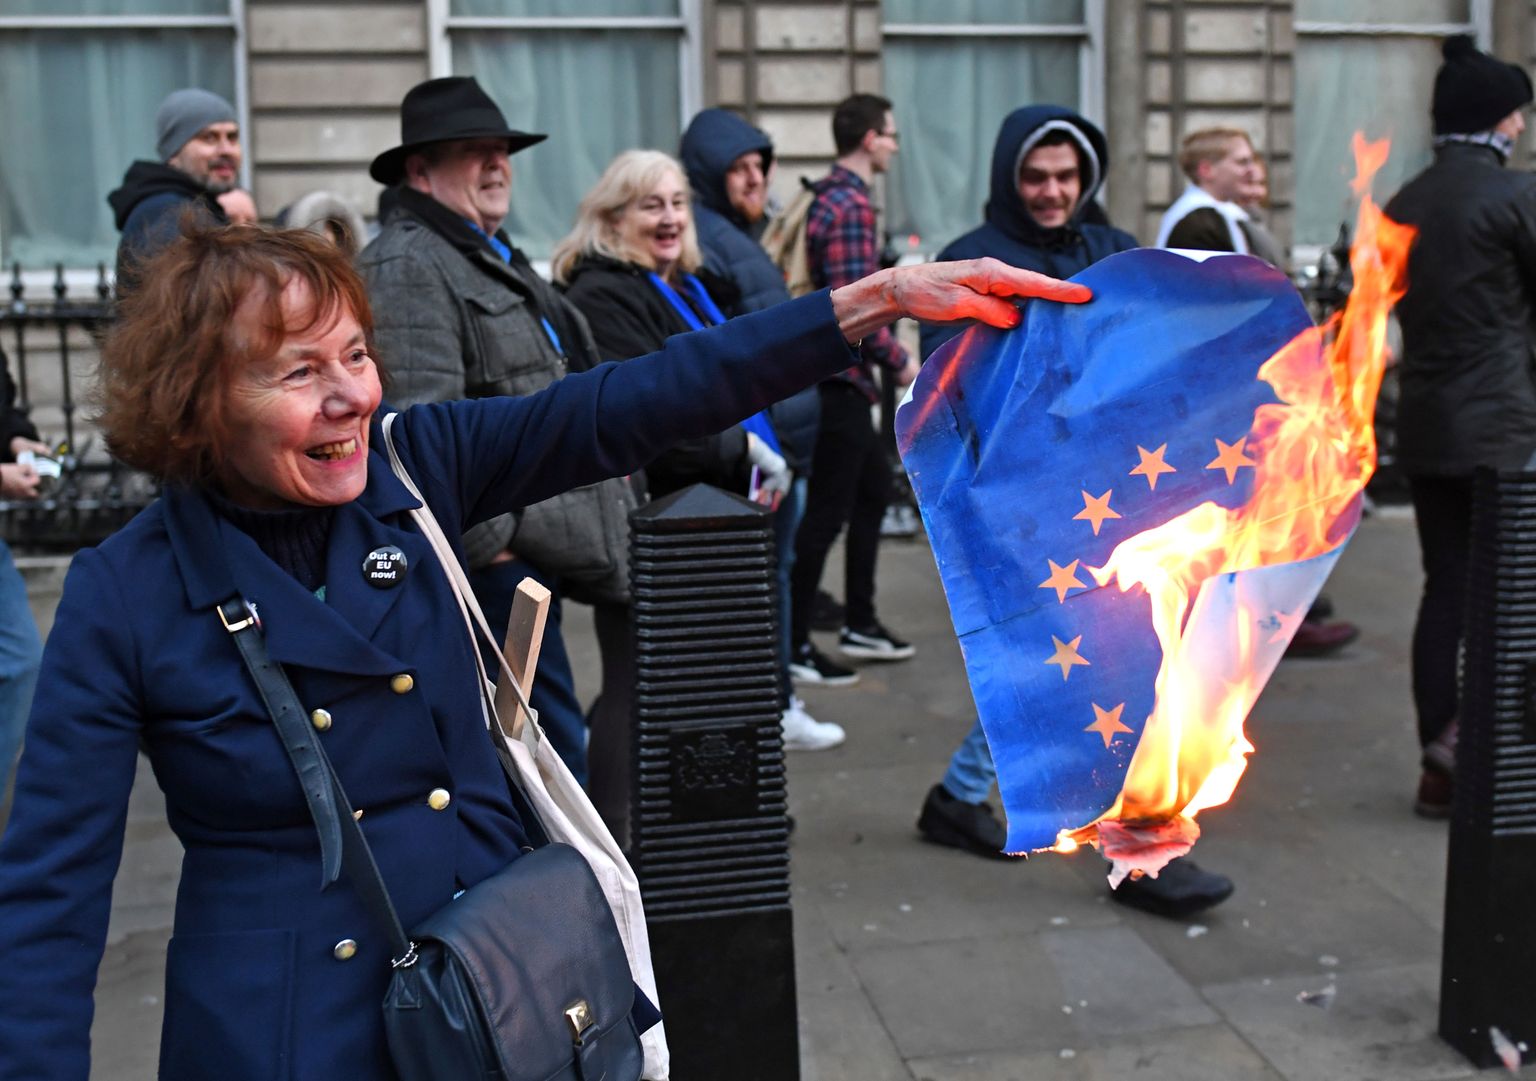 Brexit kaislības: briti pēc parlamenta balsojuma atlikšanas iziet ielās